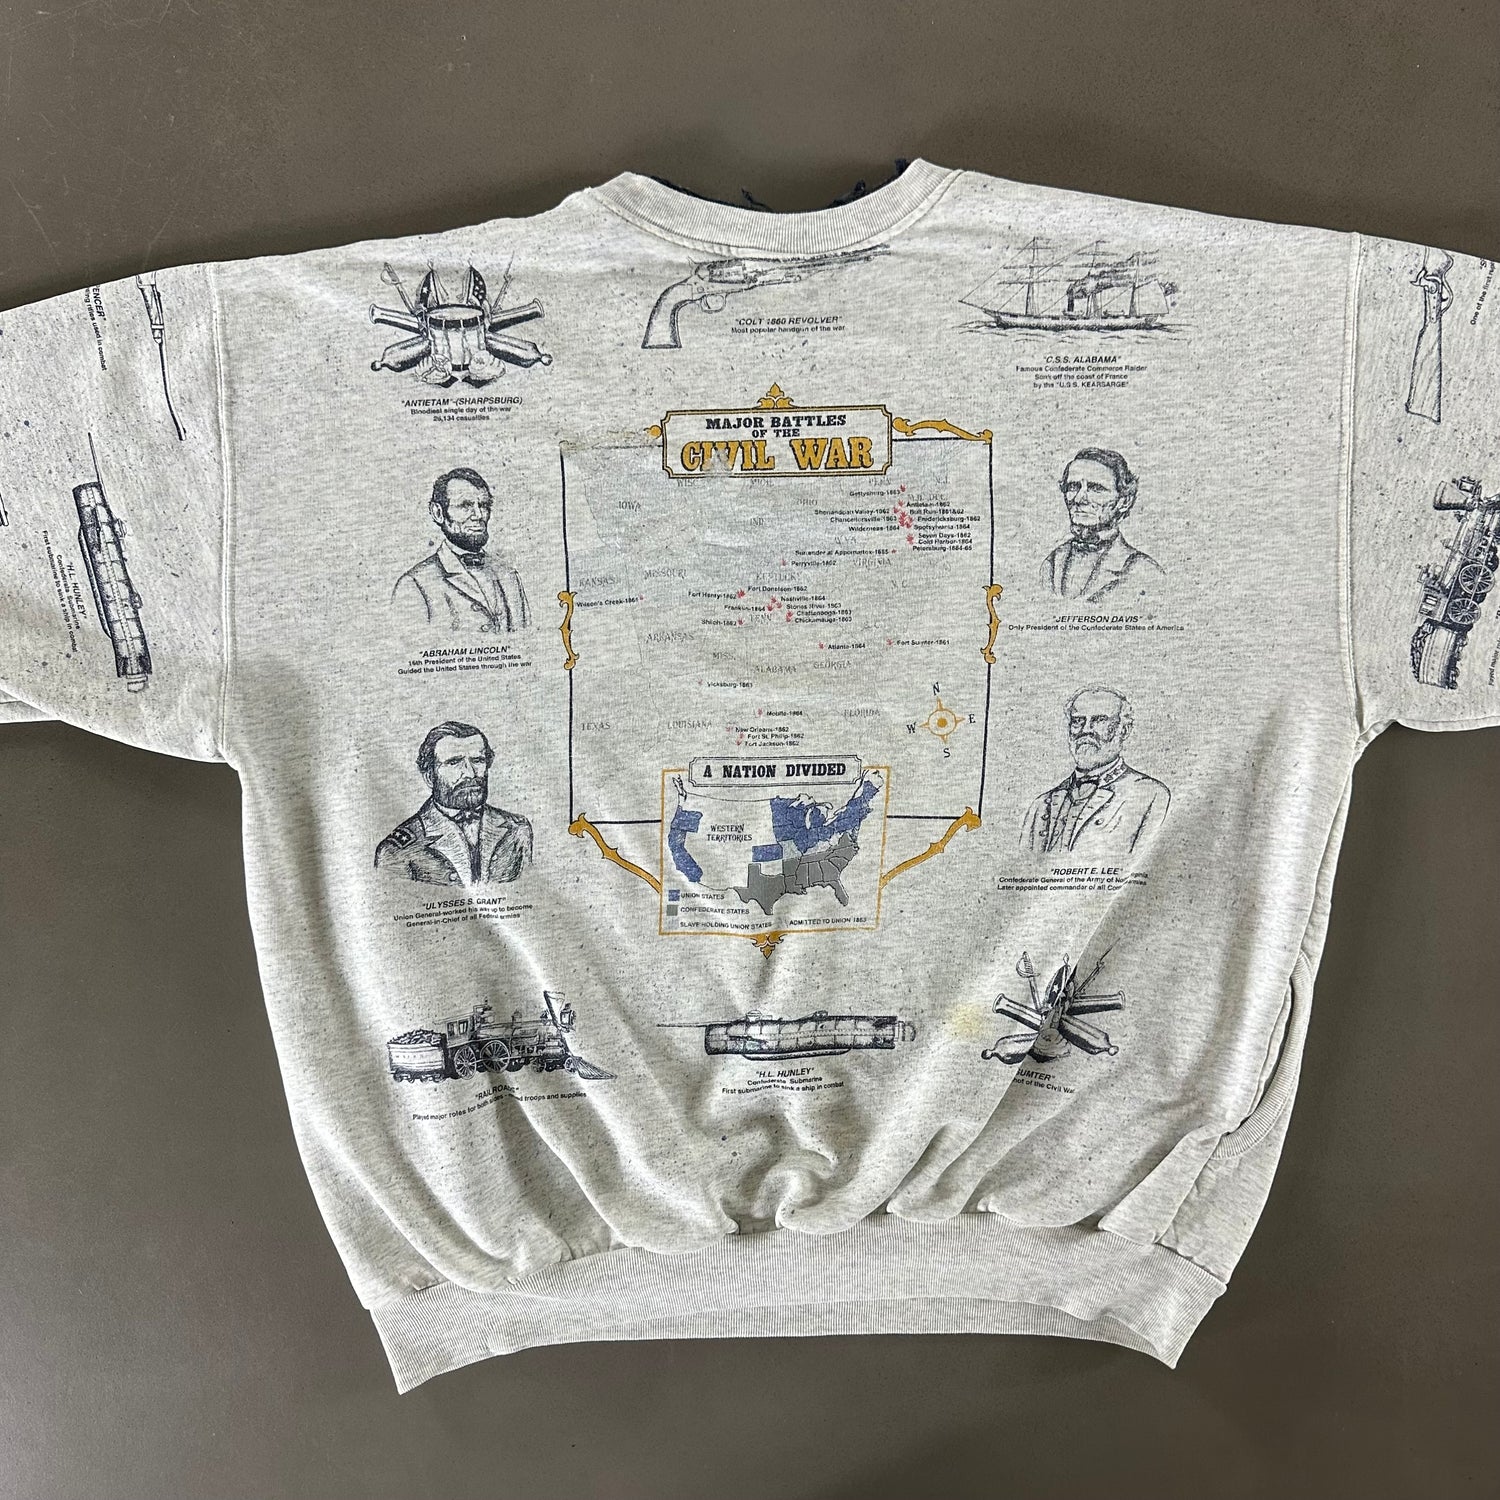 Vintage 1990s Civil War Sweatshirt size XL